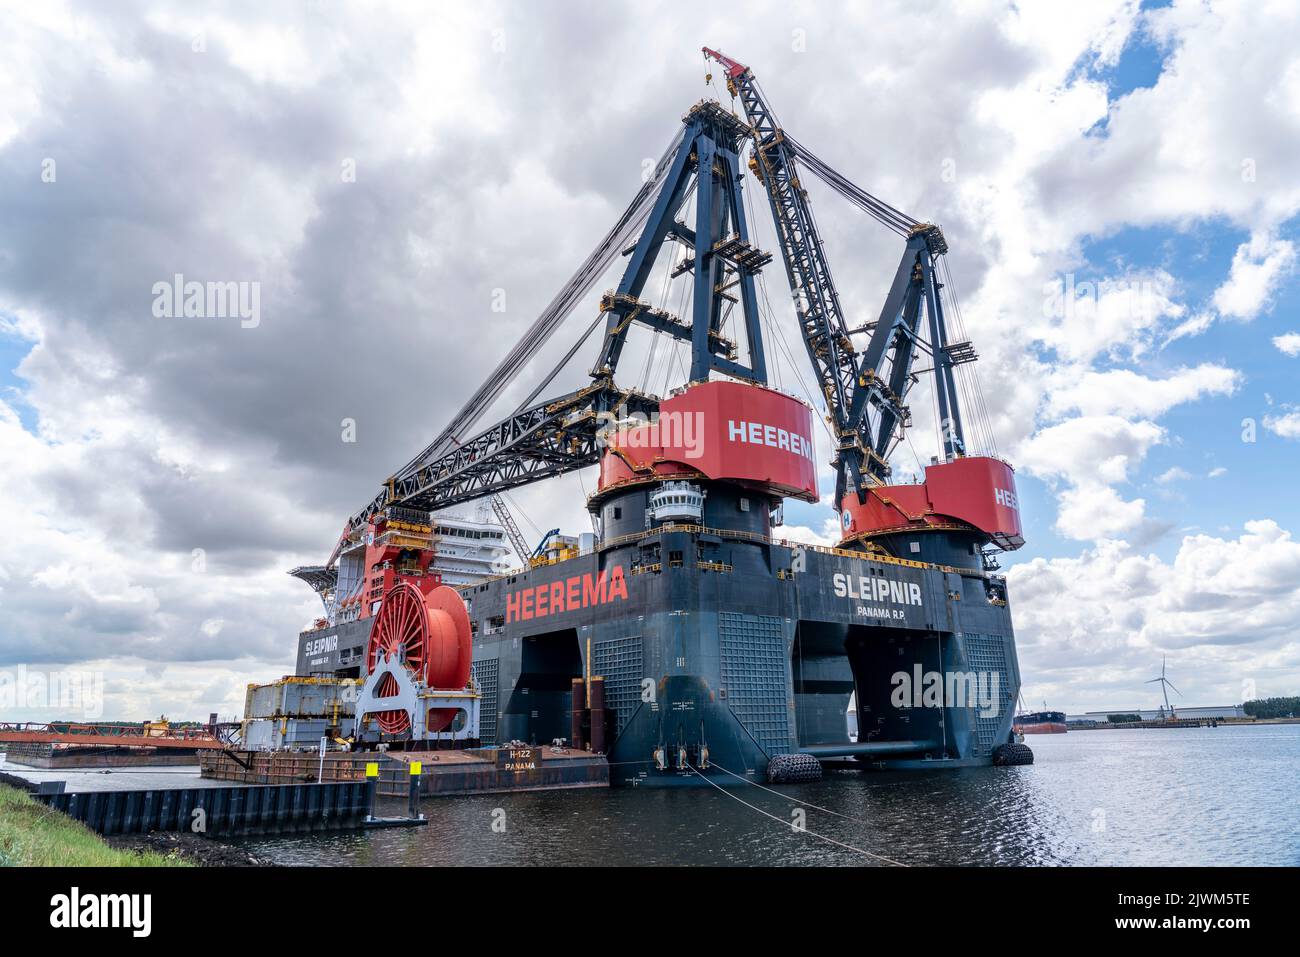 Petroleumhaven, la plus grande grue flottante au monde, Heerema Sleipnir, de Rotterdam, pays-Bas, Banque D'Images